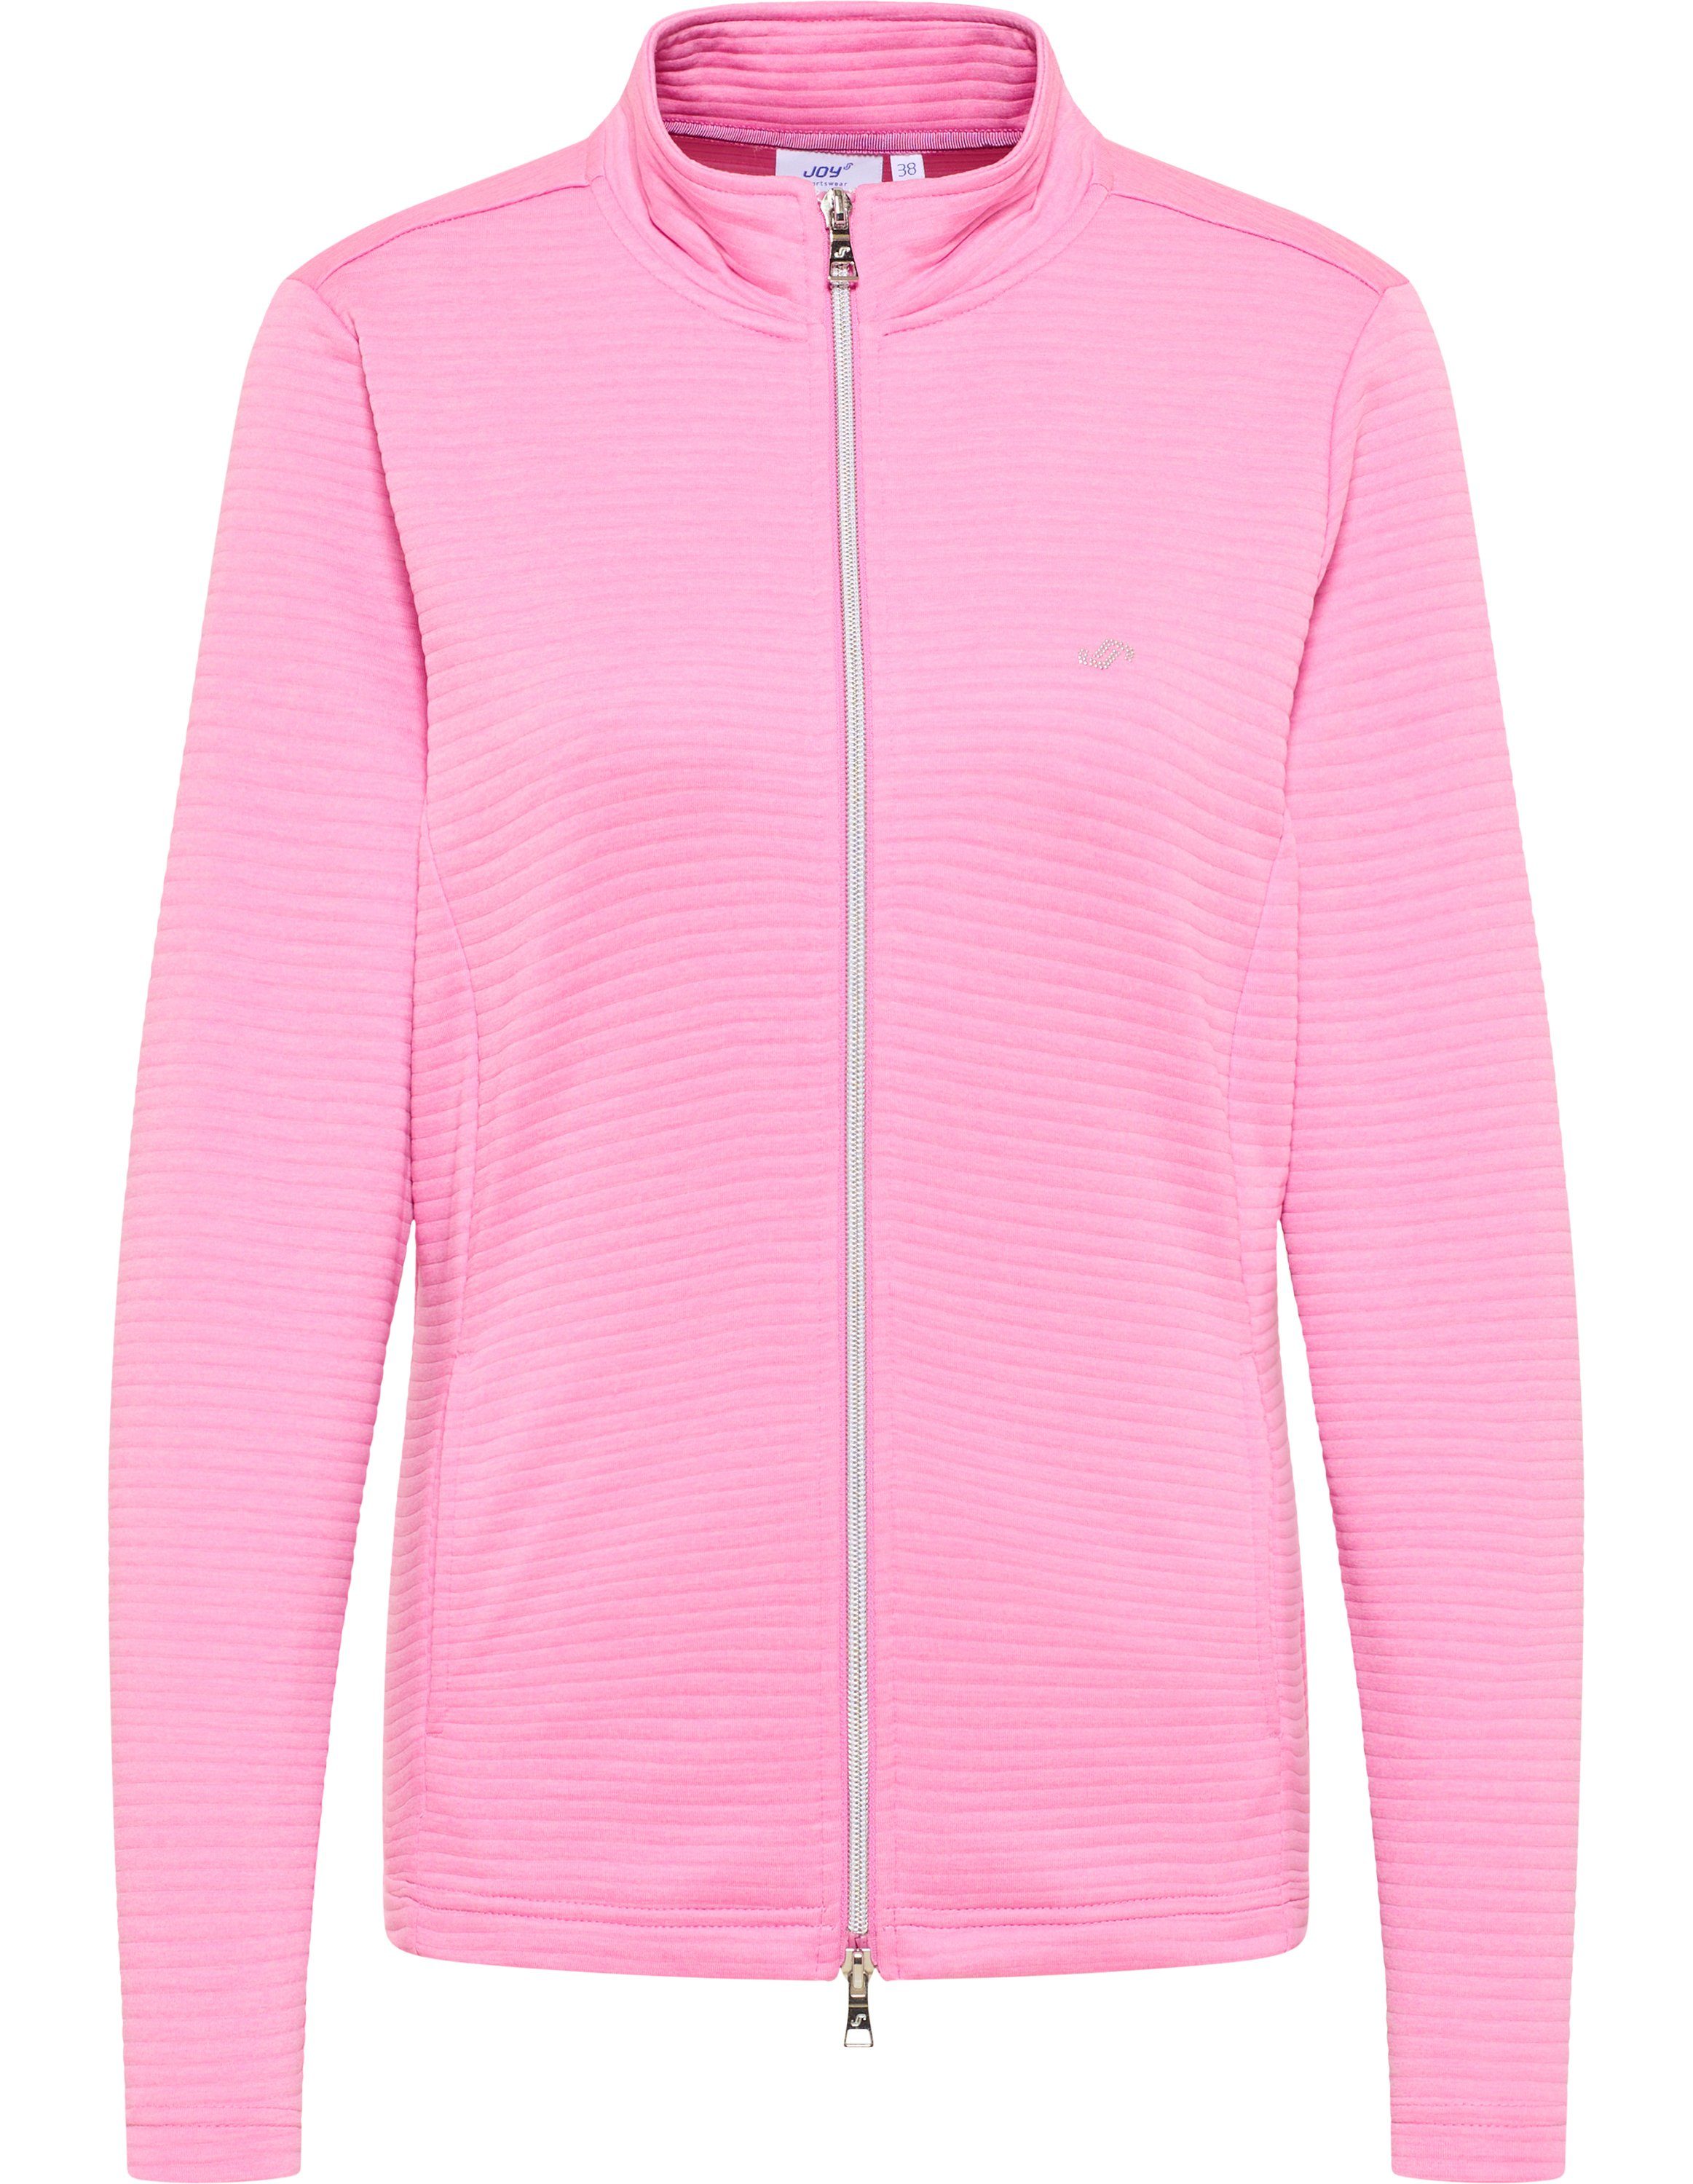 Joy Sportswear Trainingsjacke Jacke PEGGY cyclam pink melange